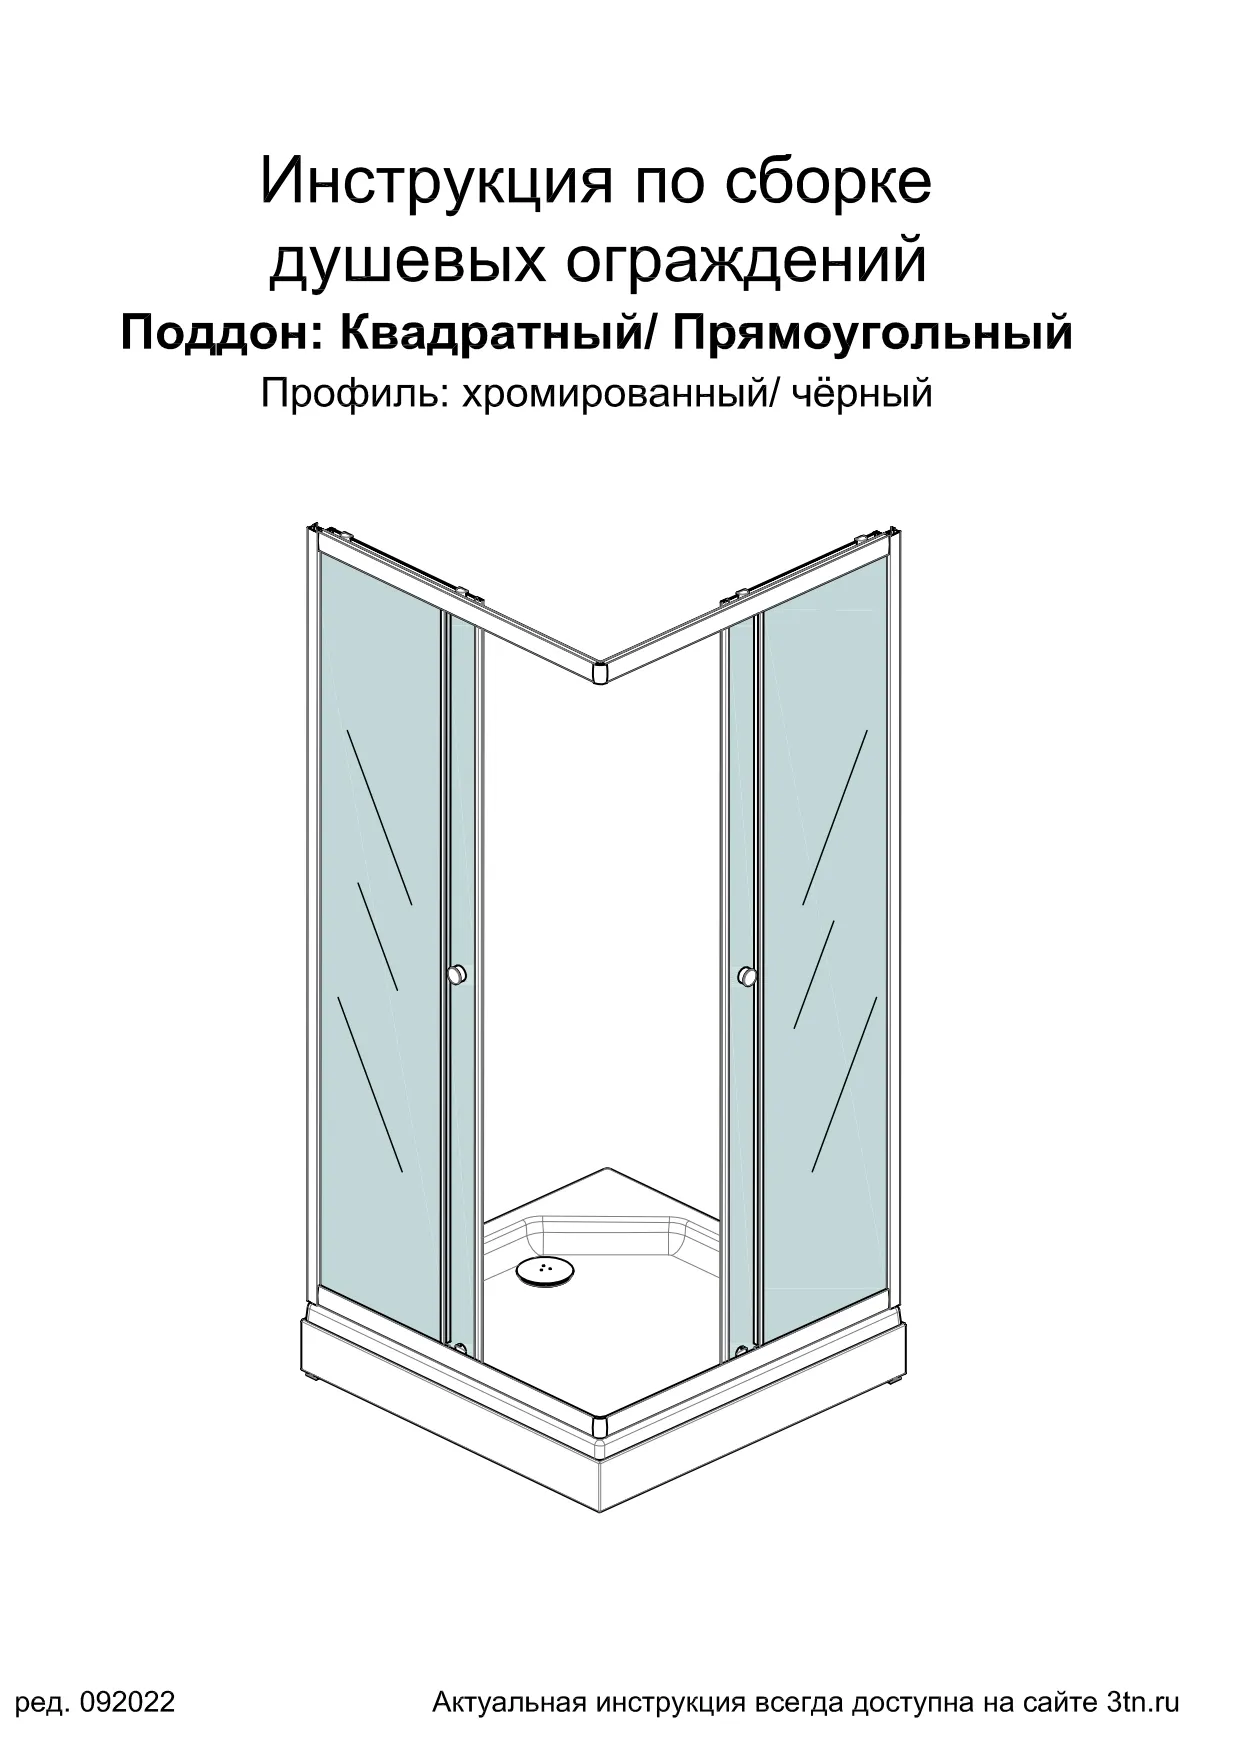 Инструкция по сборке ДО-ДШ Вента-хром, чёрный, ред. 09.2022